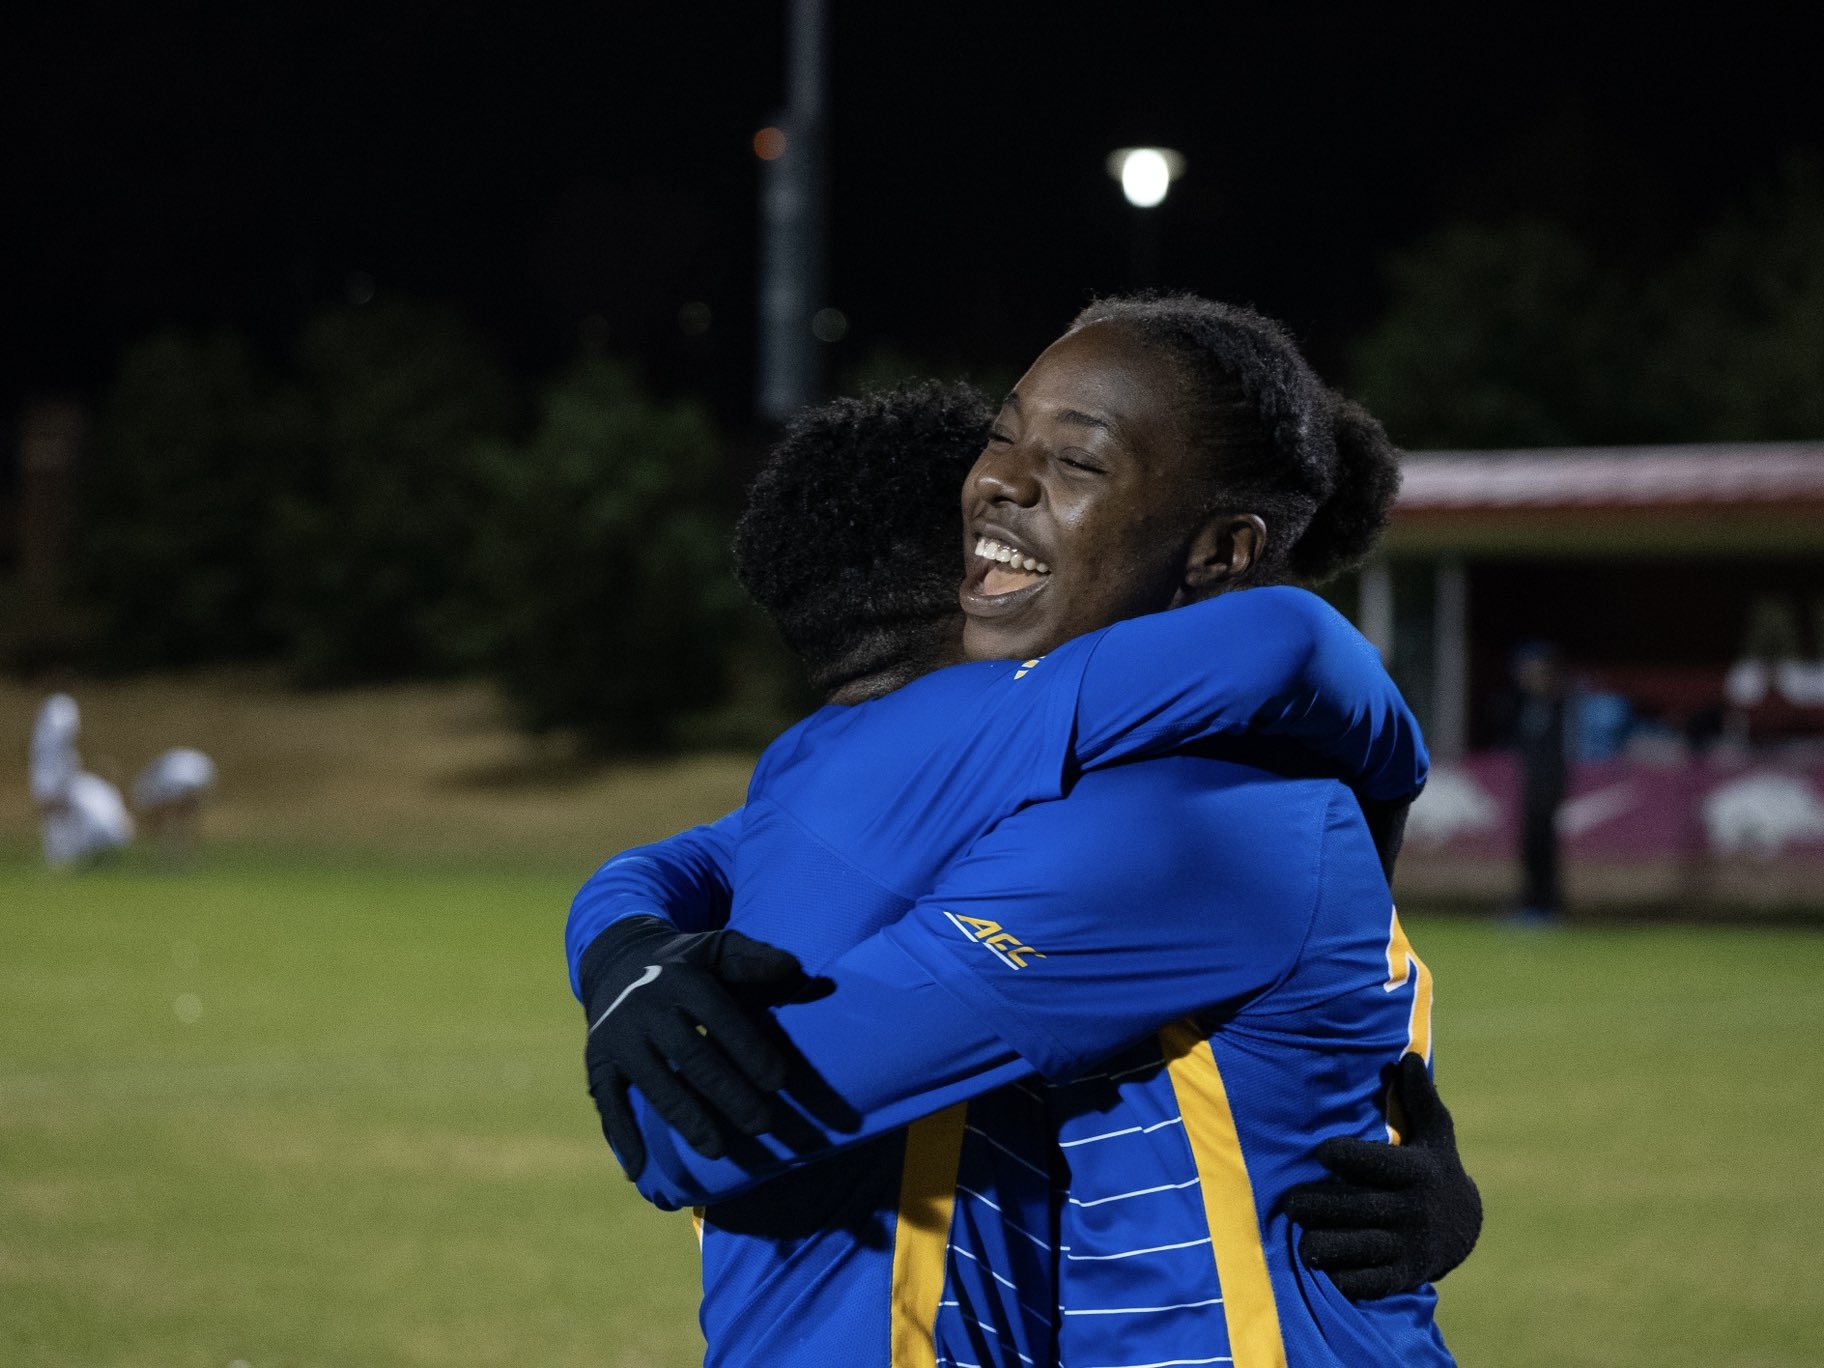 Pitt women's soccer celebrates Sweet 16 win over Memphis